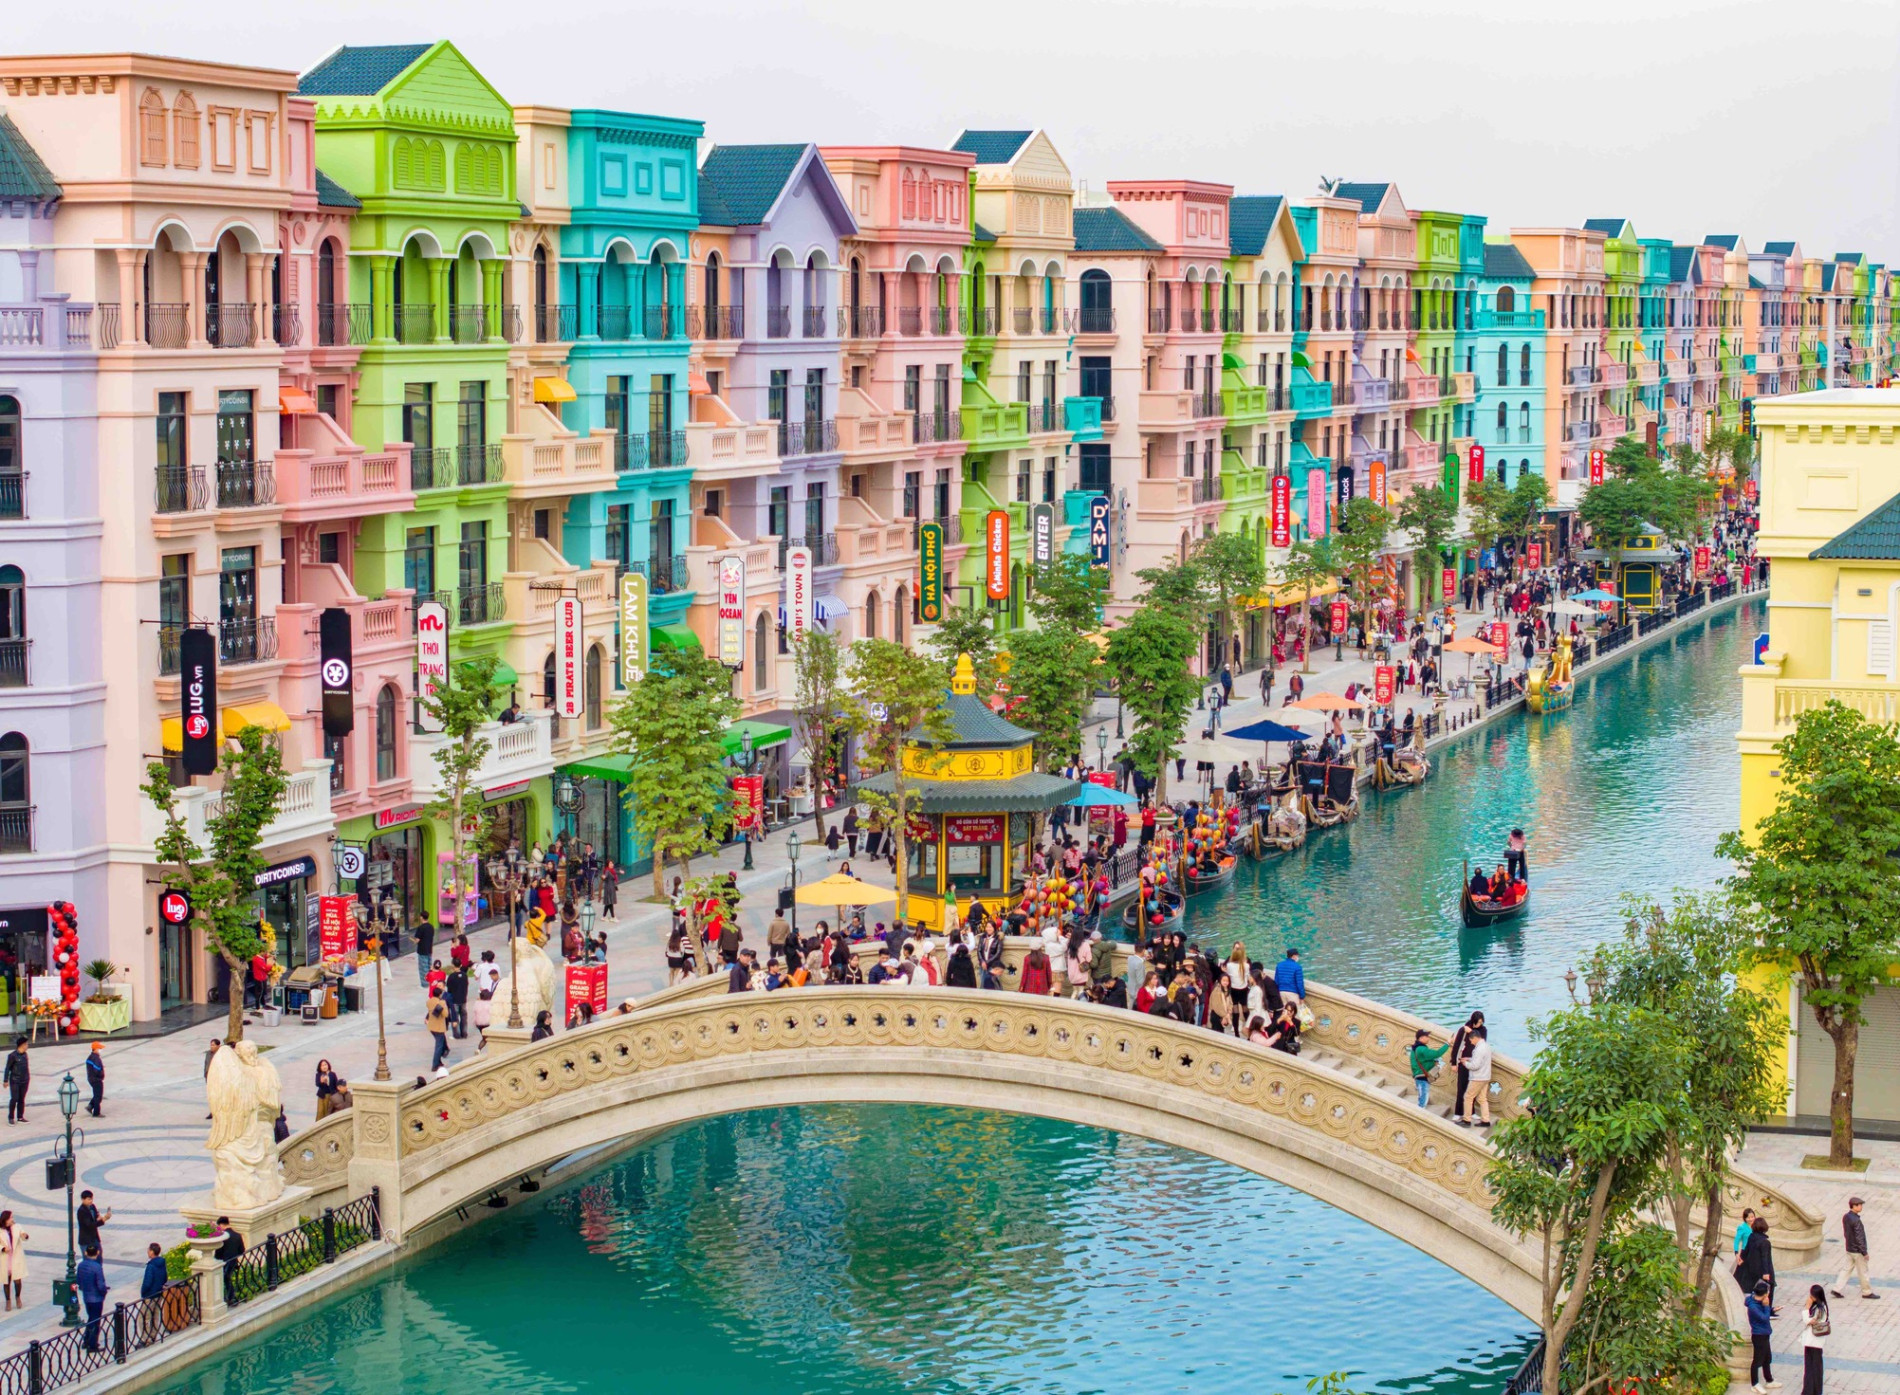 Tổ chức tại Grand World – Ocean City, “Ngày Hội Xanh” được kỳ vọng là sự kiện cộng đồng về môi trường đạt kỷ lục có số người hưởng ứng đông đảo nhất Việt Nam.